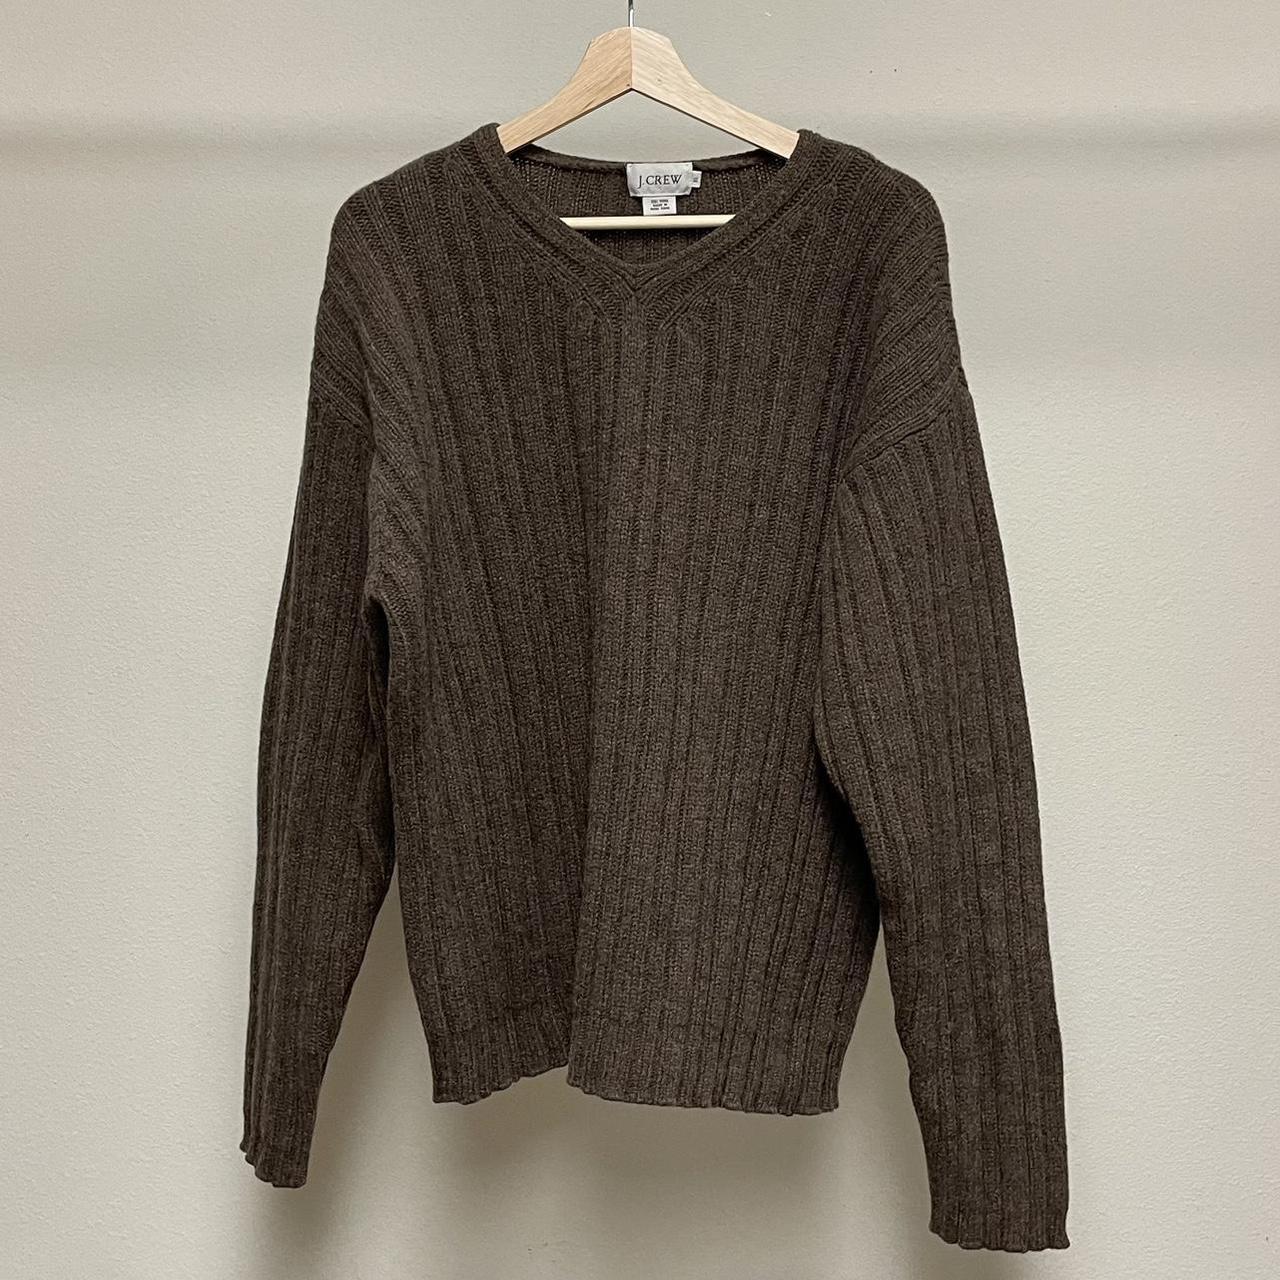 Vintage brown wool sweater 1990s earth tone ribbed... - Depop